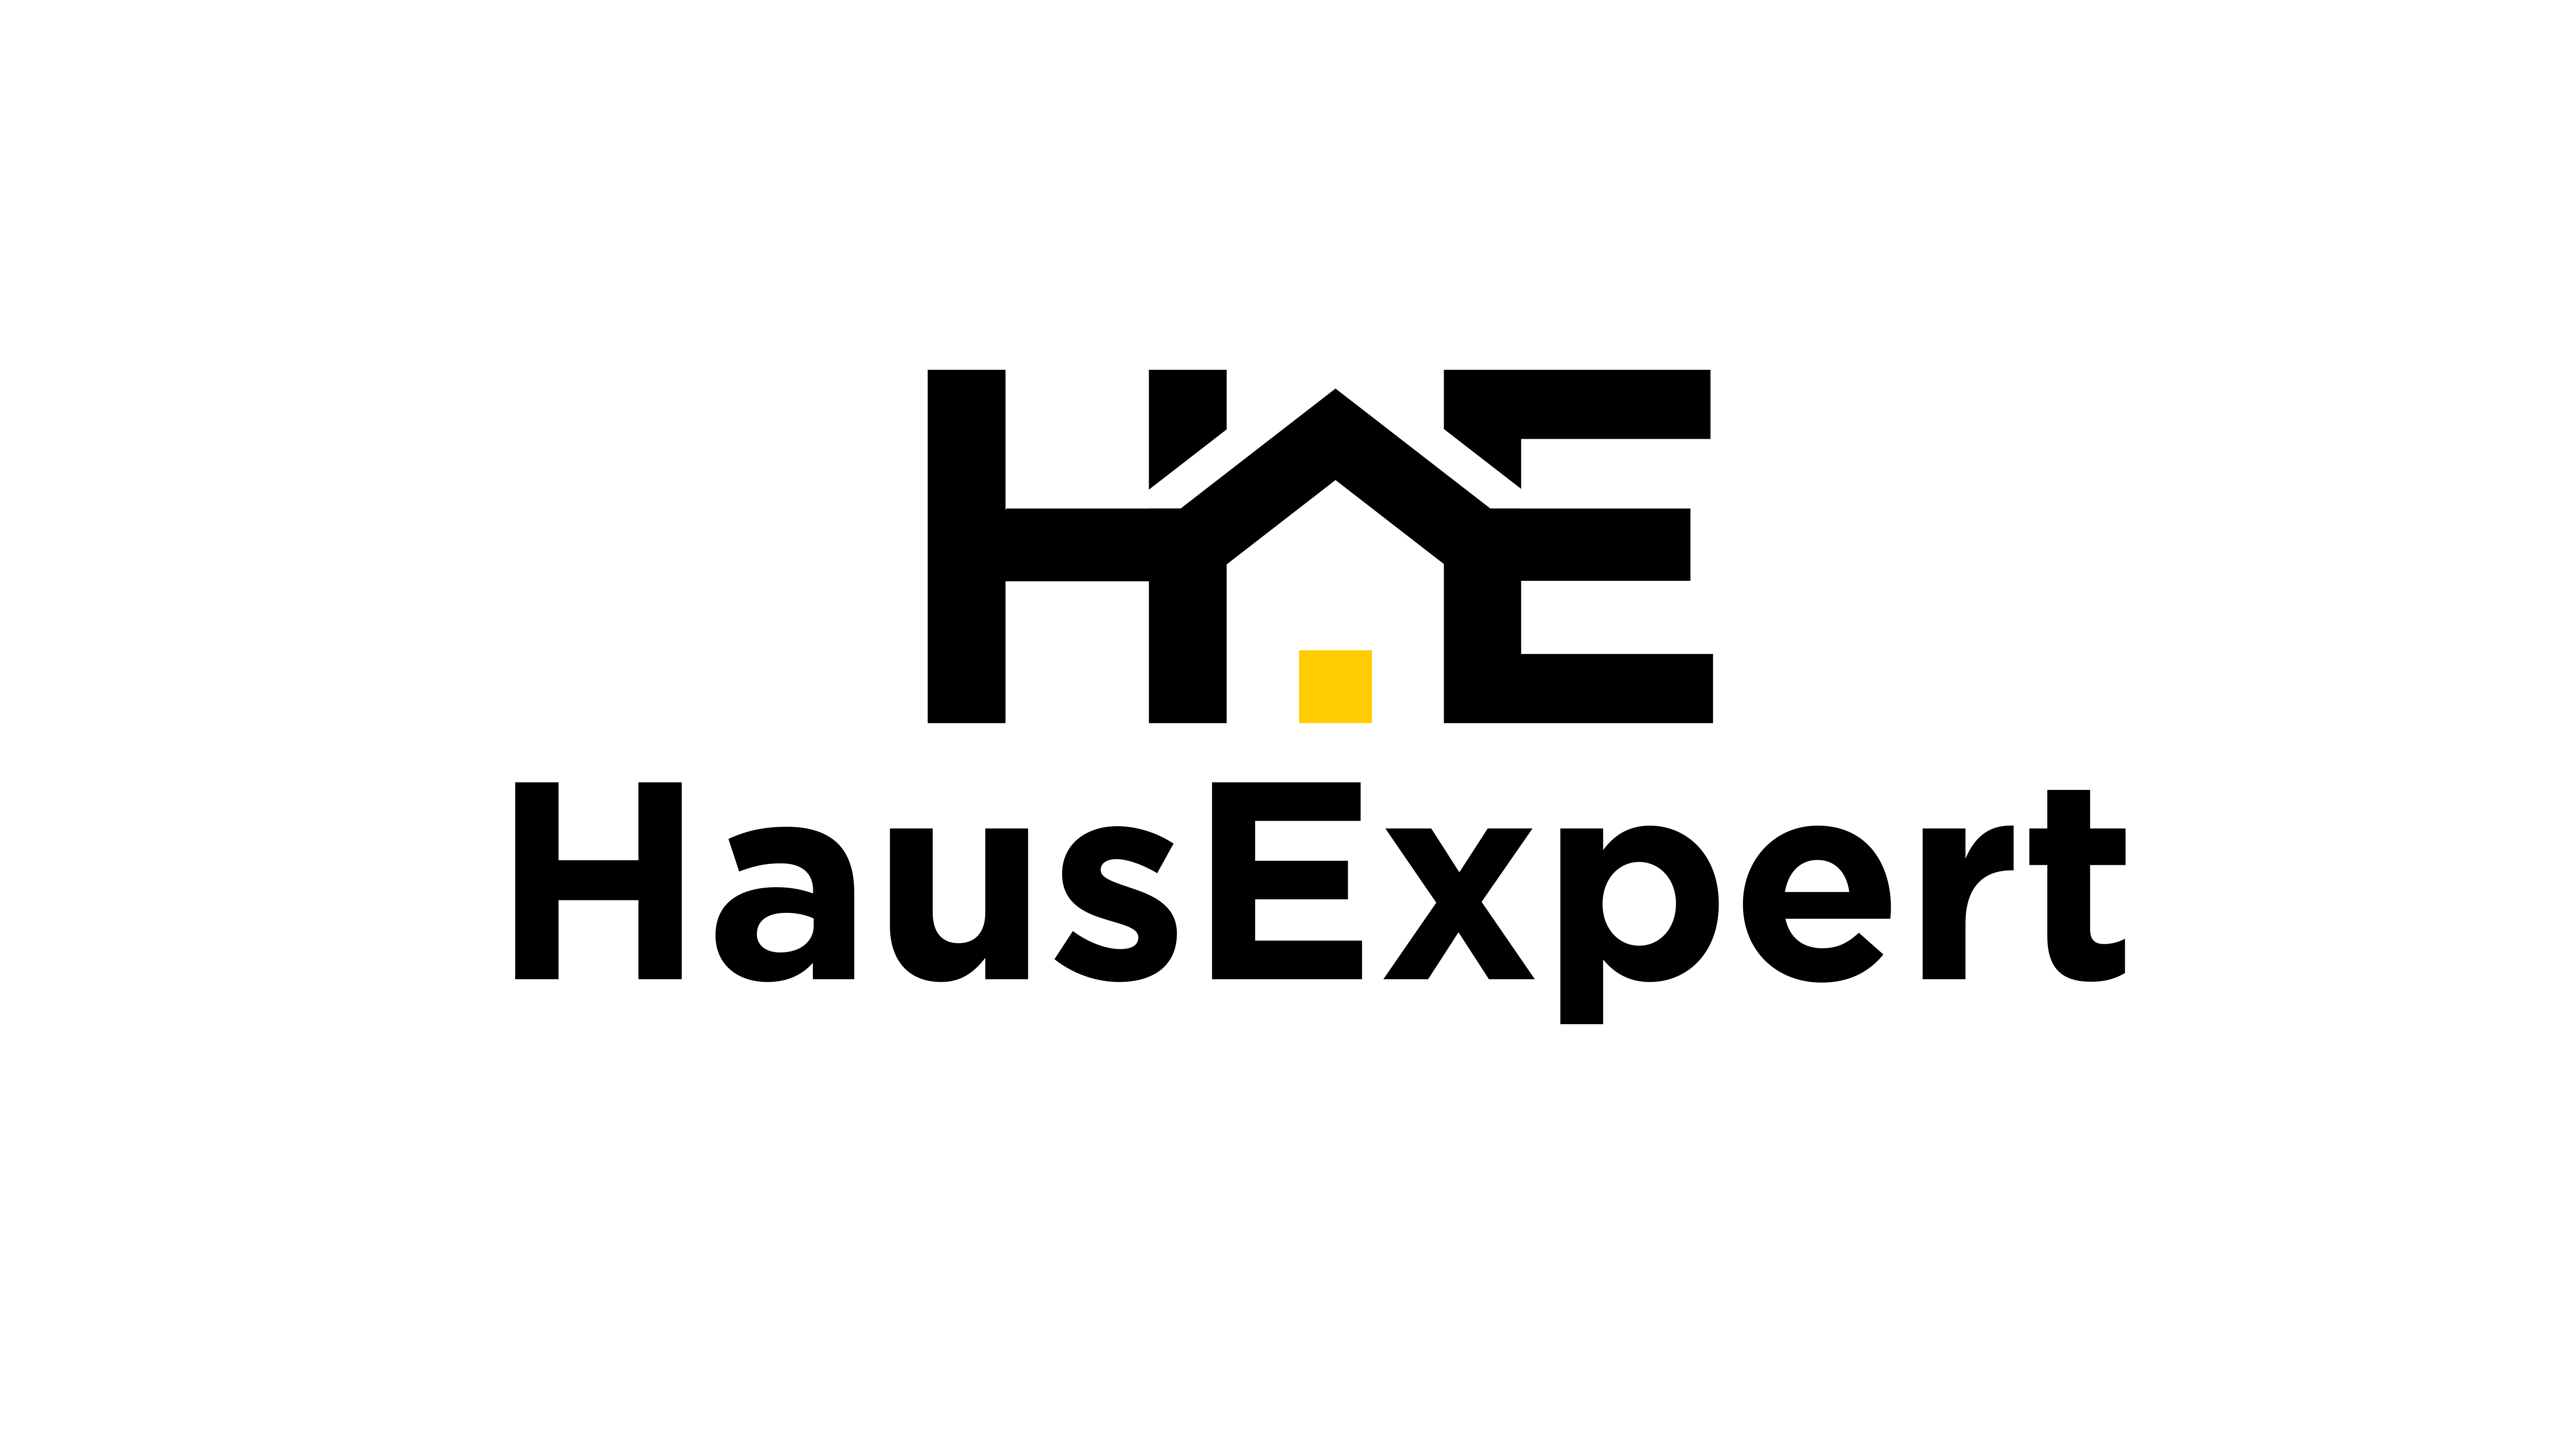 HausExpert